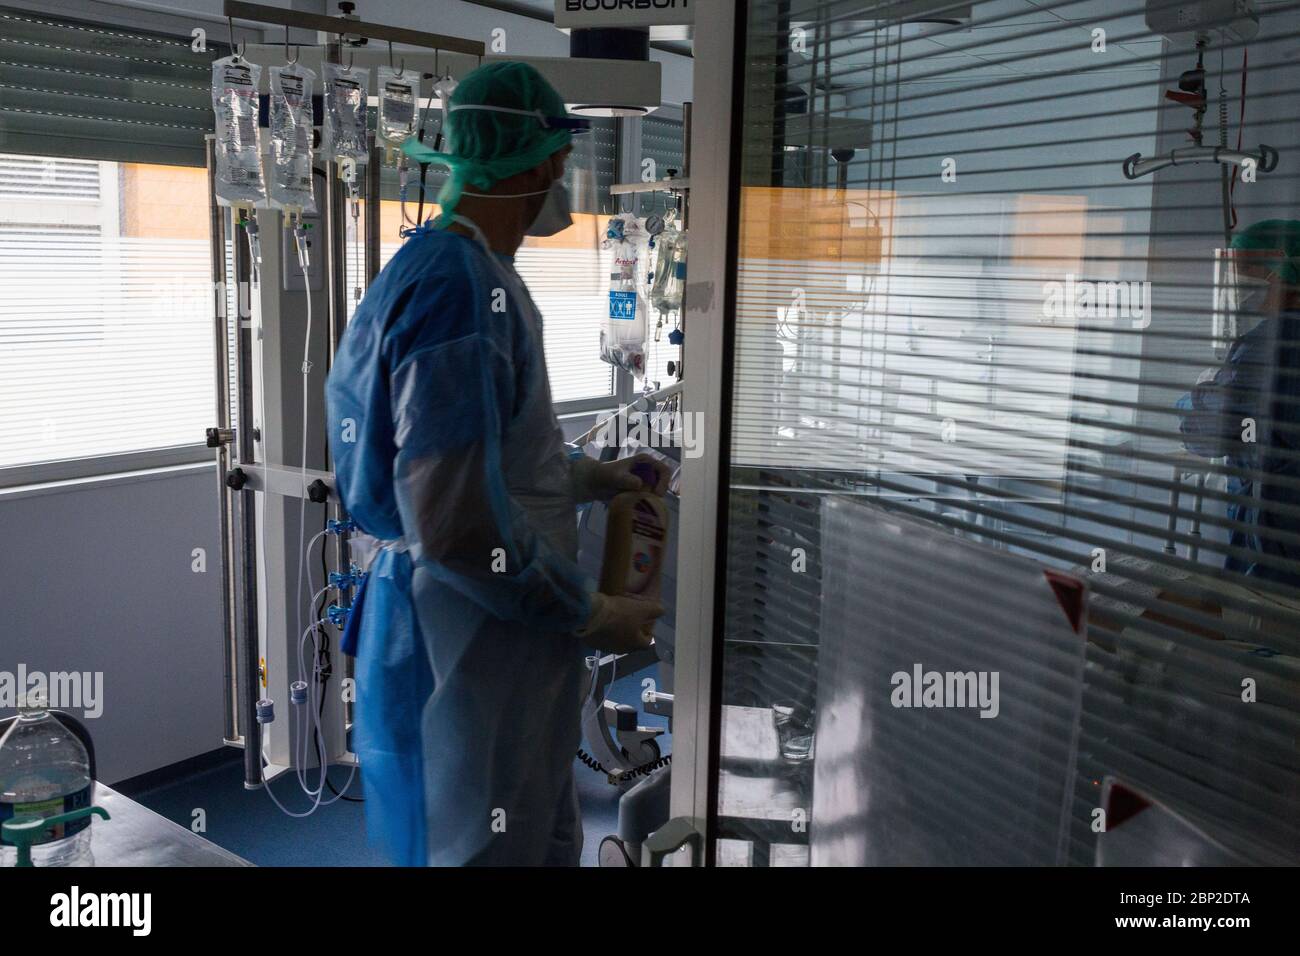 Soins intensifs, patients affectés par Covid 19, hôpital de Bordeaux, France. Banque D'Images